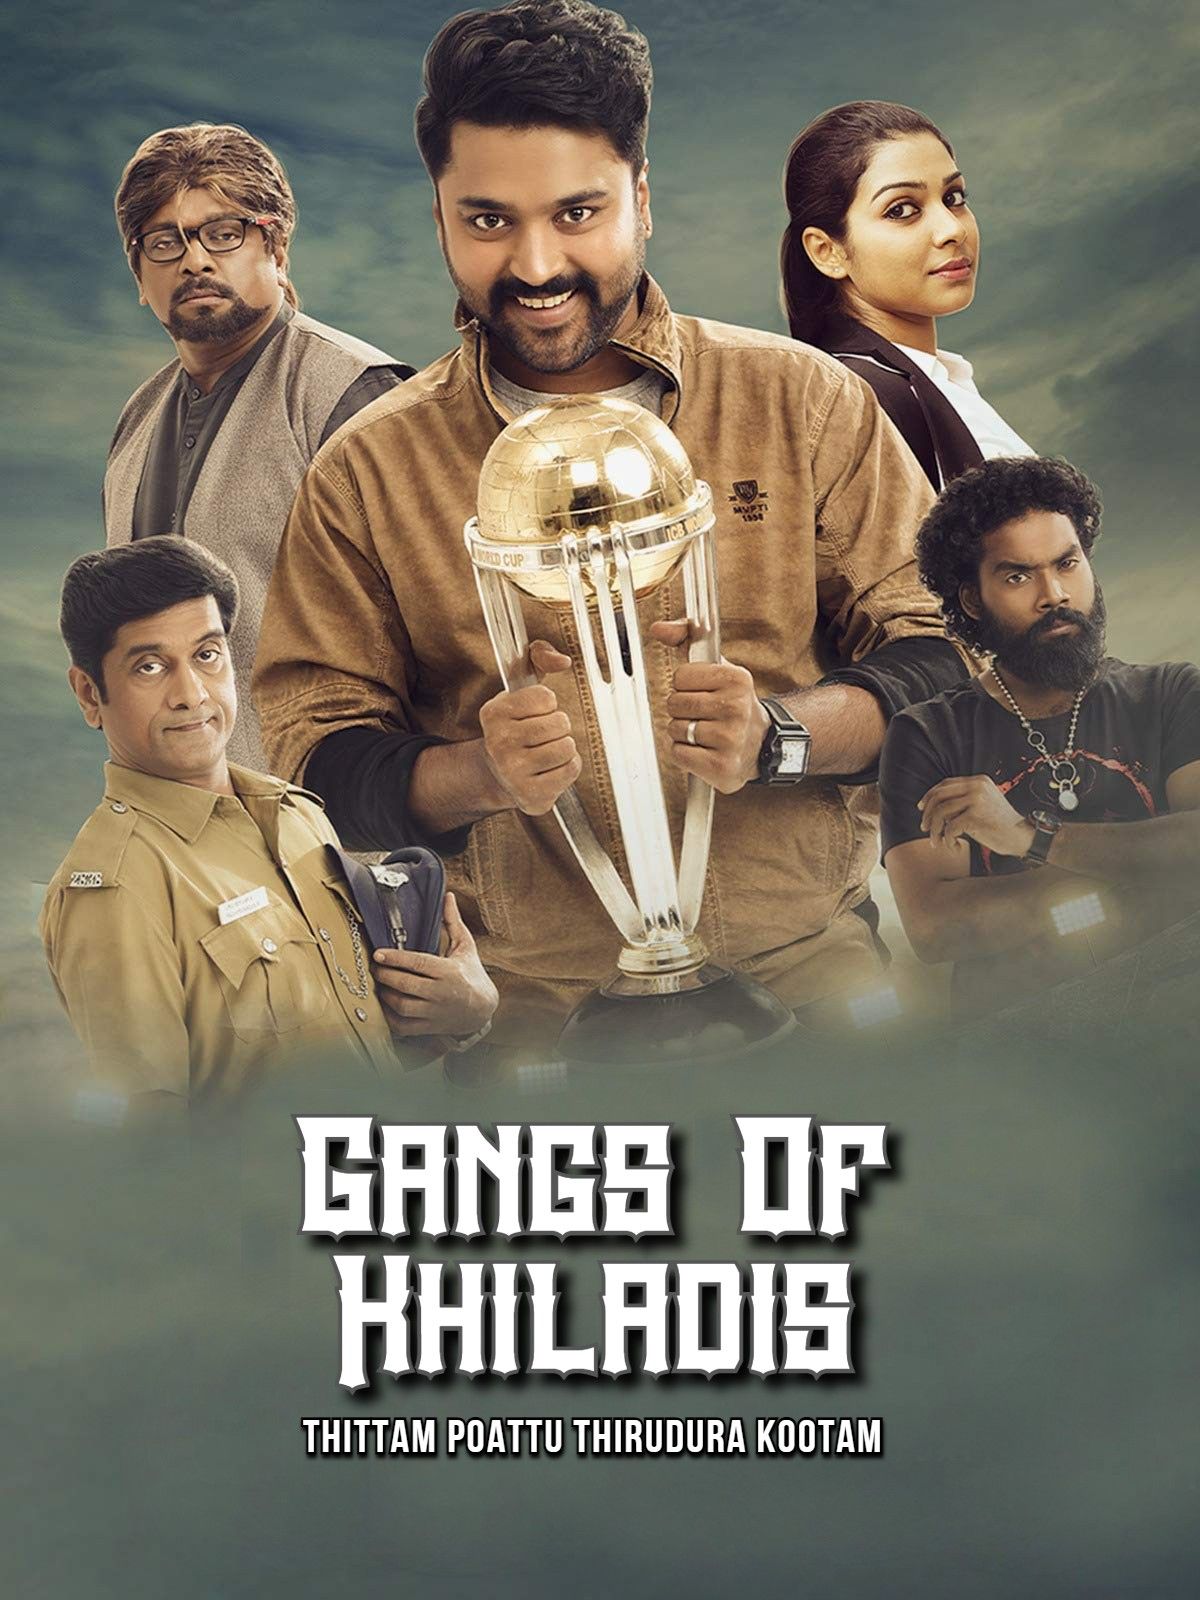 Gangs Of Khiladis (Thittam Poattu Thirudura Kootam) 2021 Hindi Dubbed HDRip download full movie